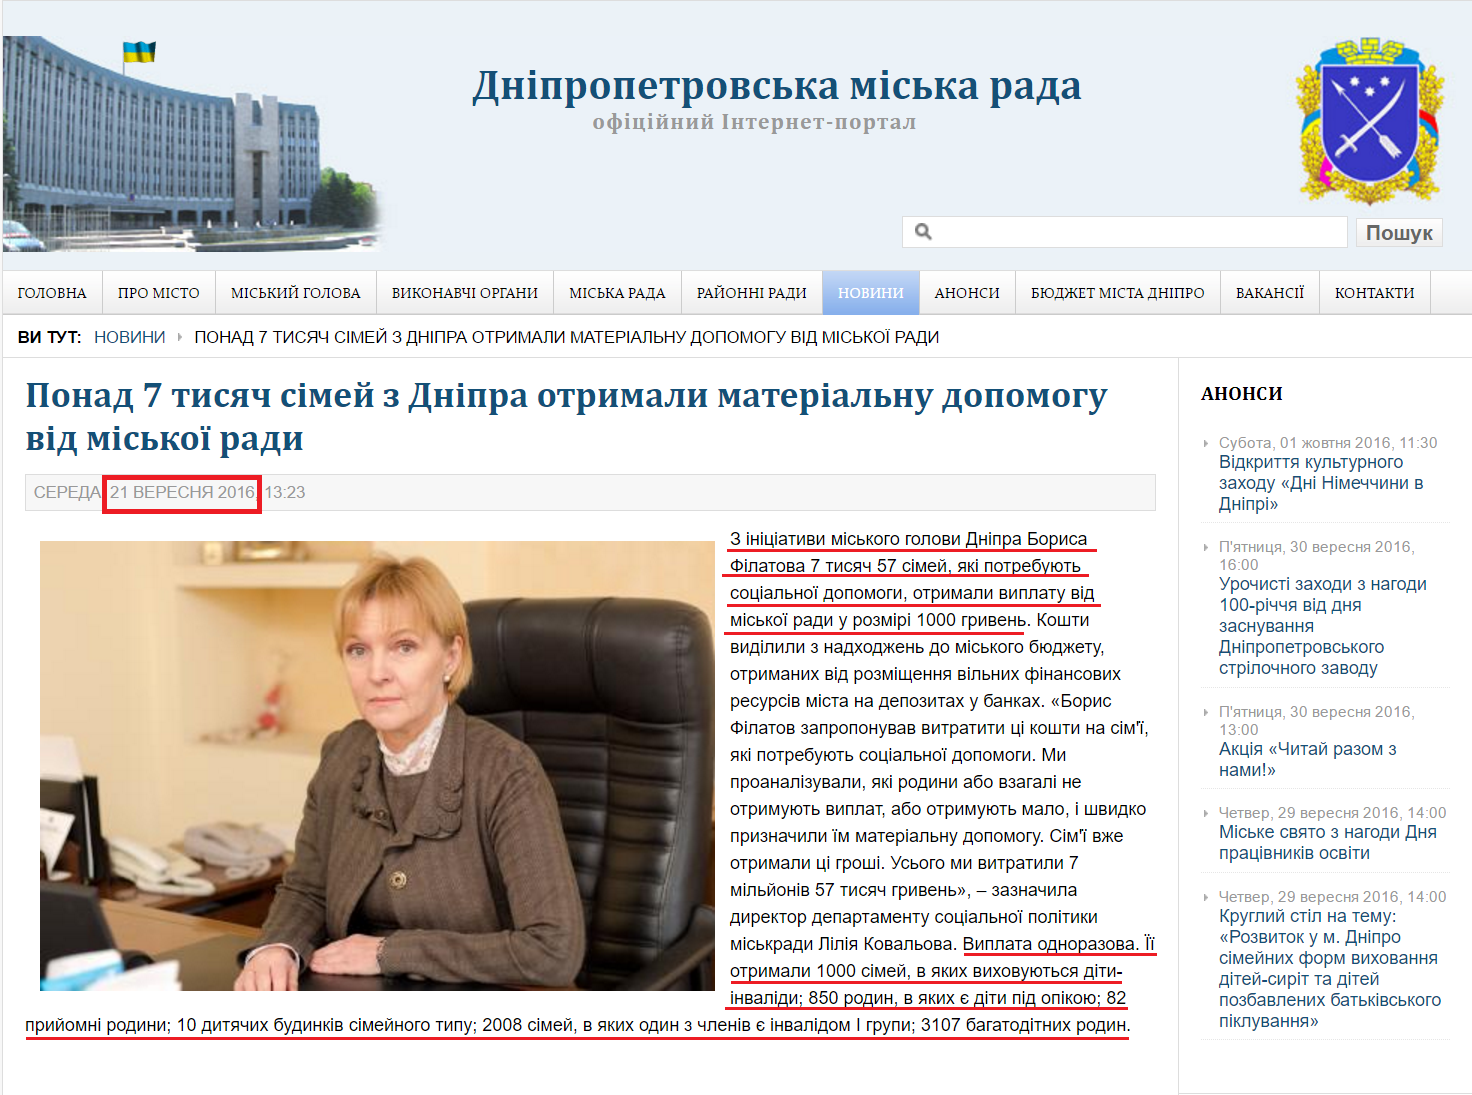 http://dniprorada.gov.ua/ponad-7-tisjach-simej-z-dnipra-otrimali-materialnu-dopomogu-vid-miskoi-radi